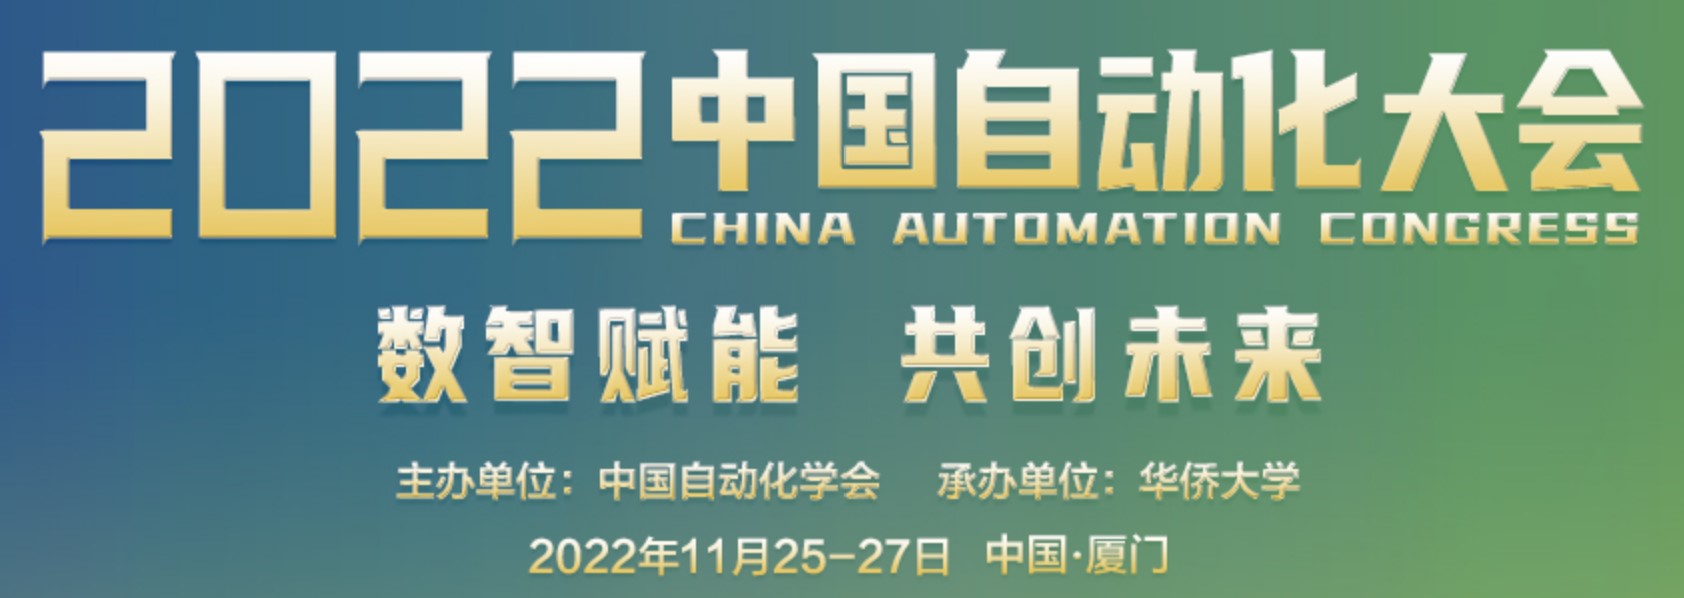 宇果助力2022中国自动化大会